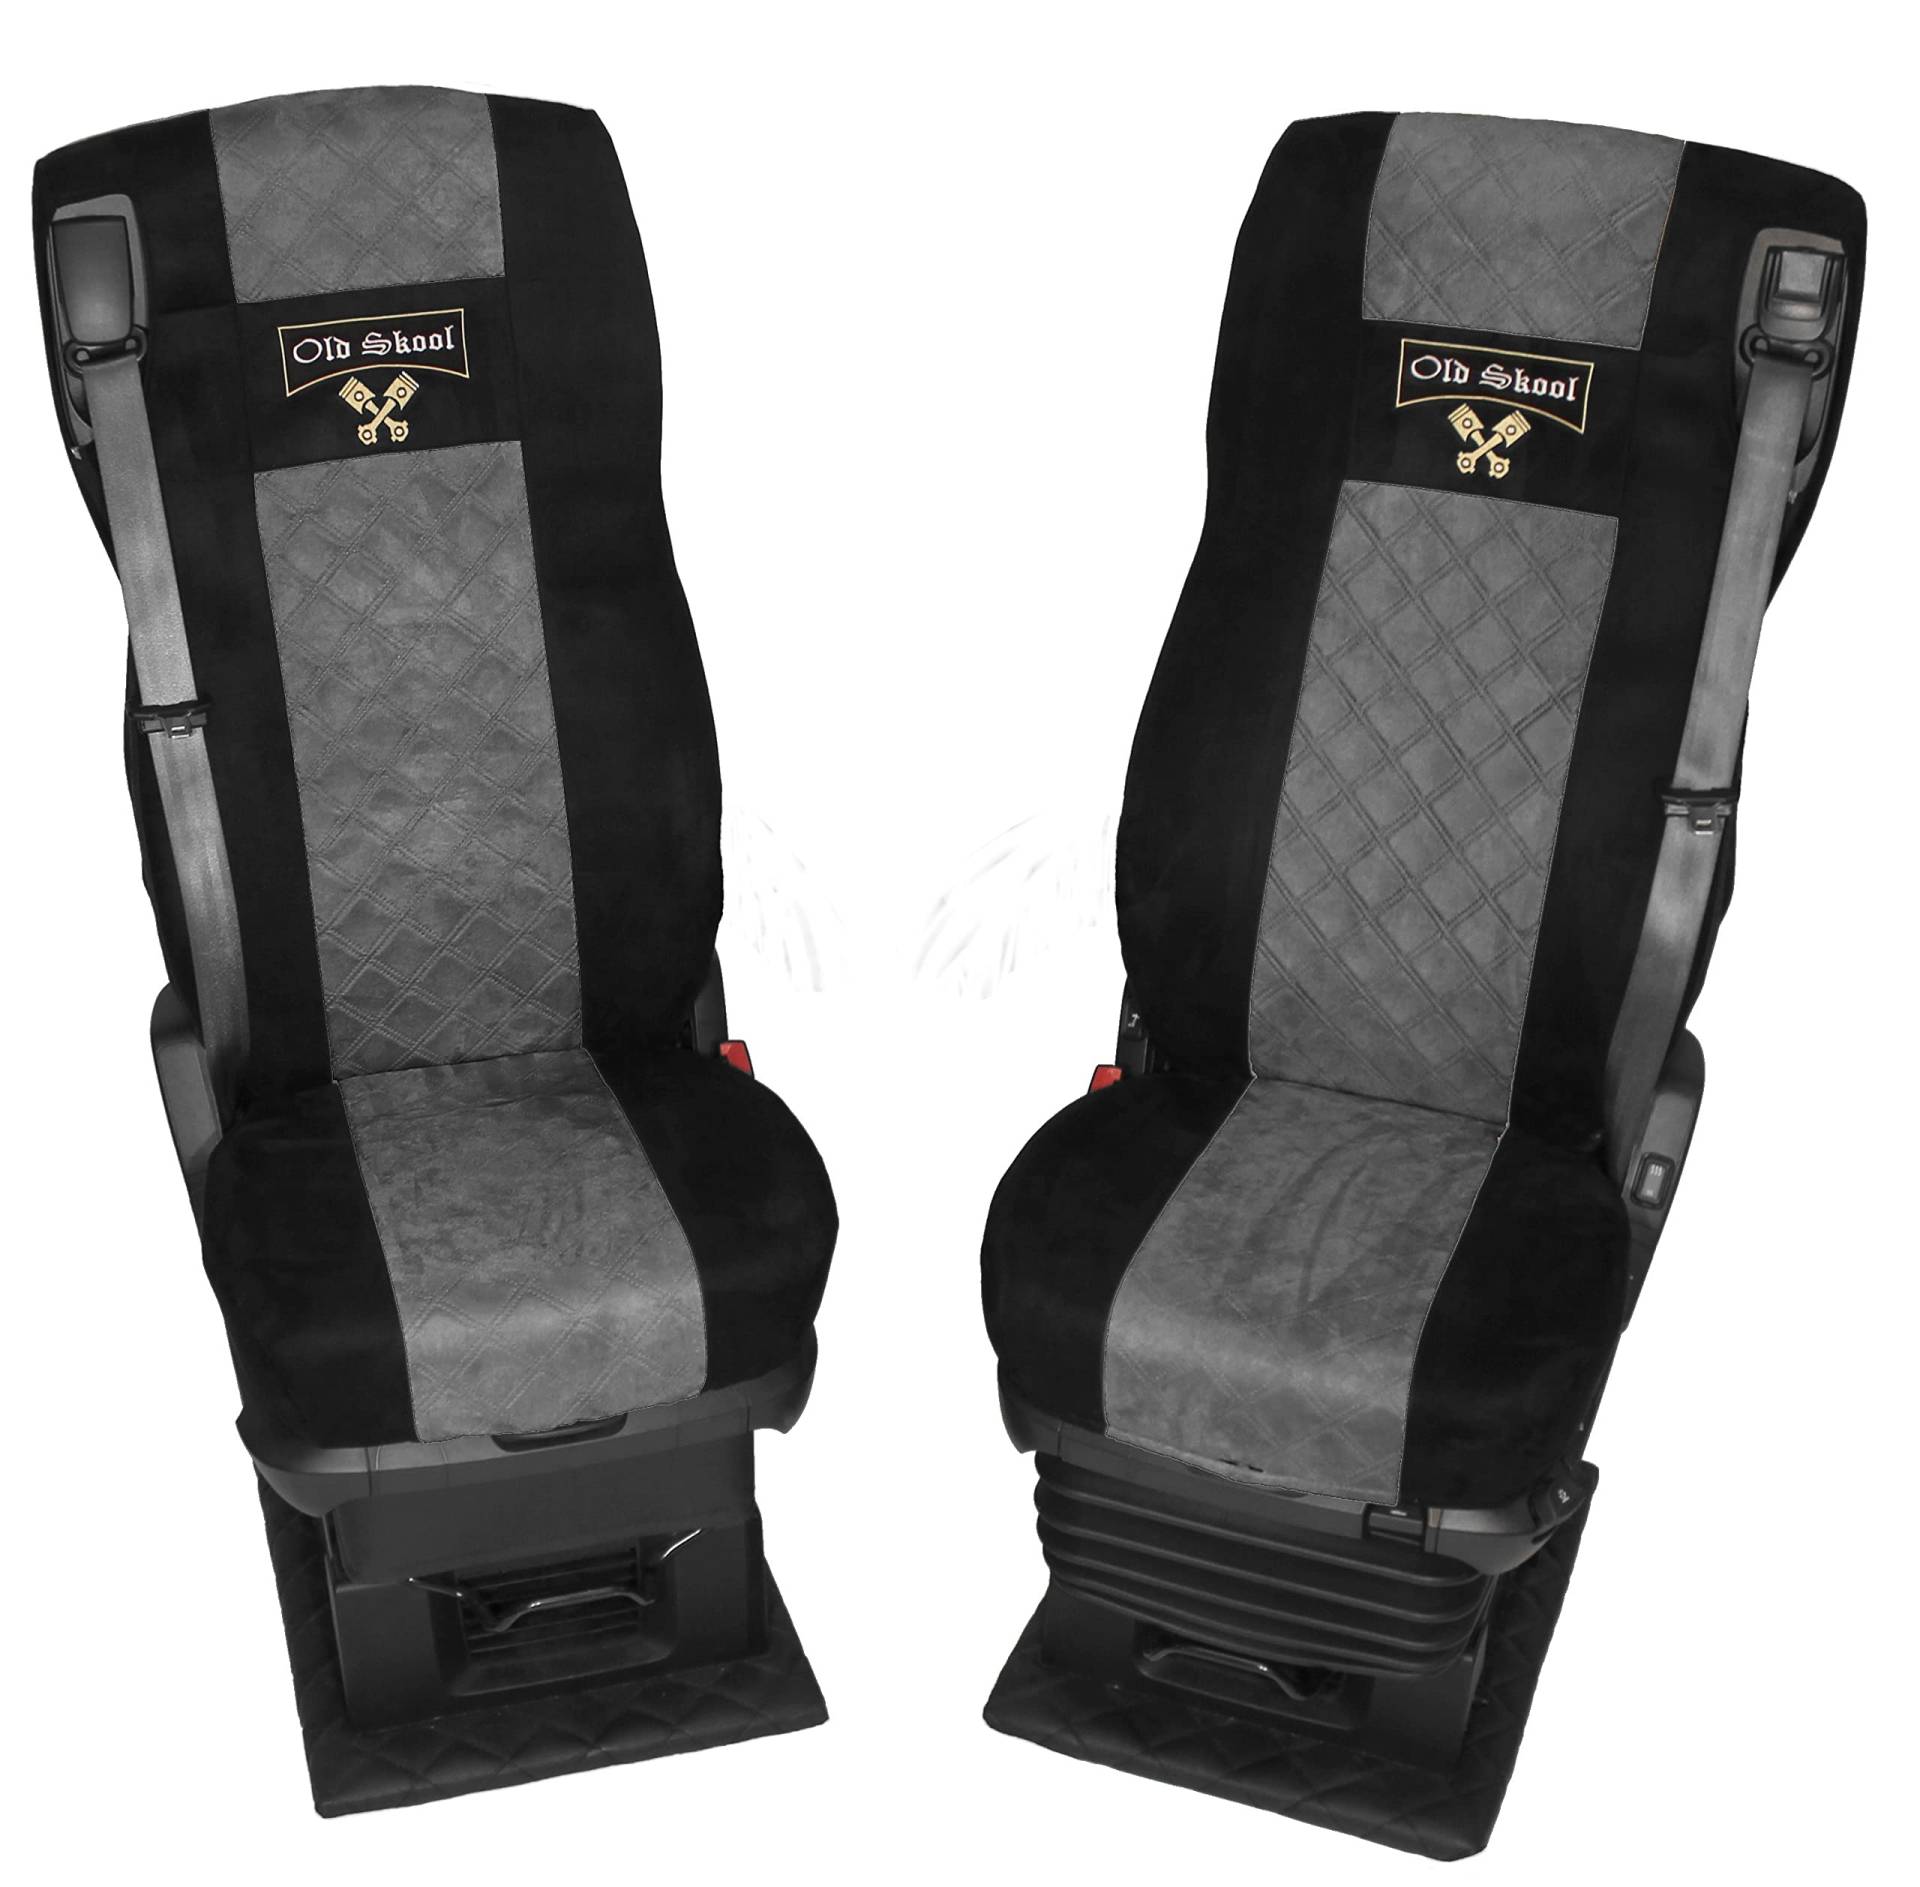 Adomo LKW Sitzbezüge für DAF ab 2021 XG und XG+ schwarz grau Beifahrer luftgefedert Old Skool von Adomo